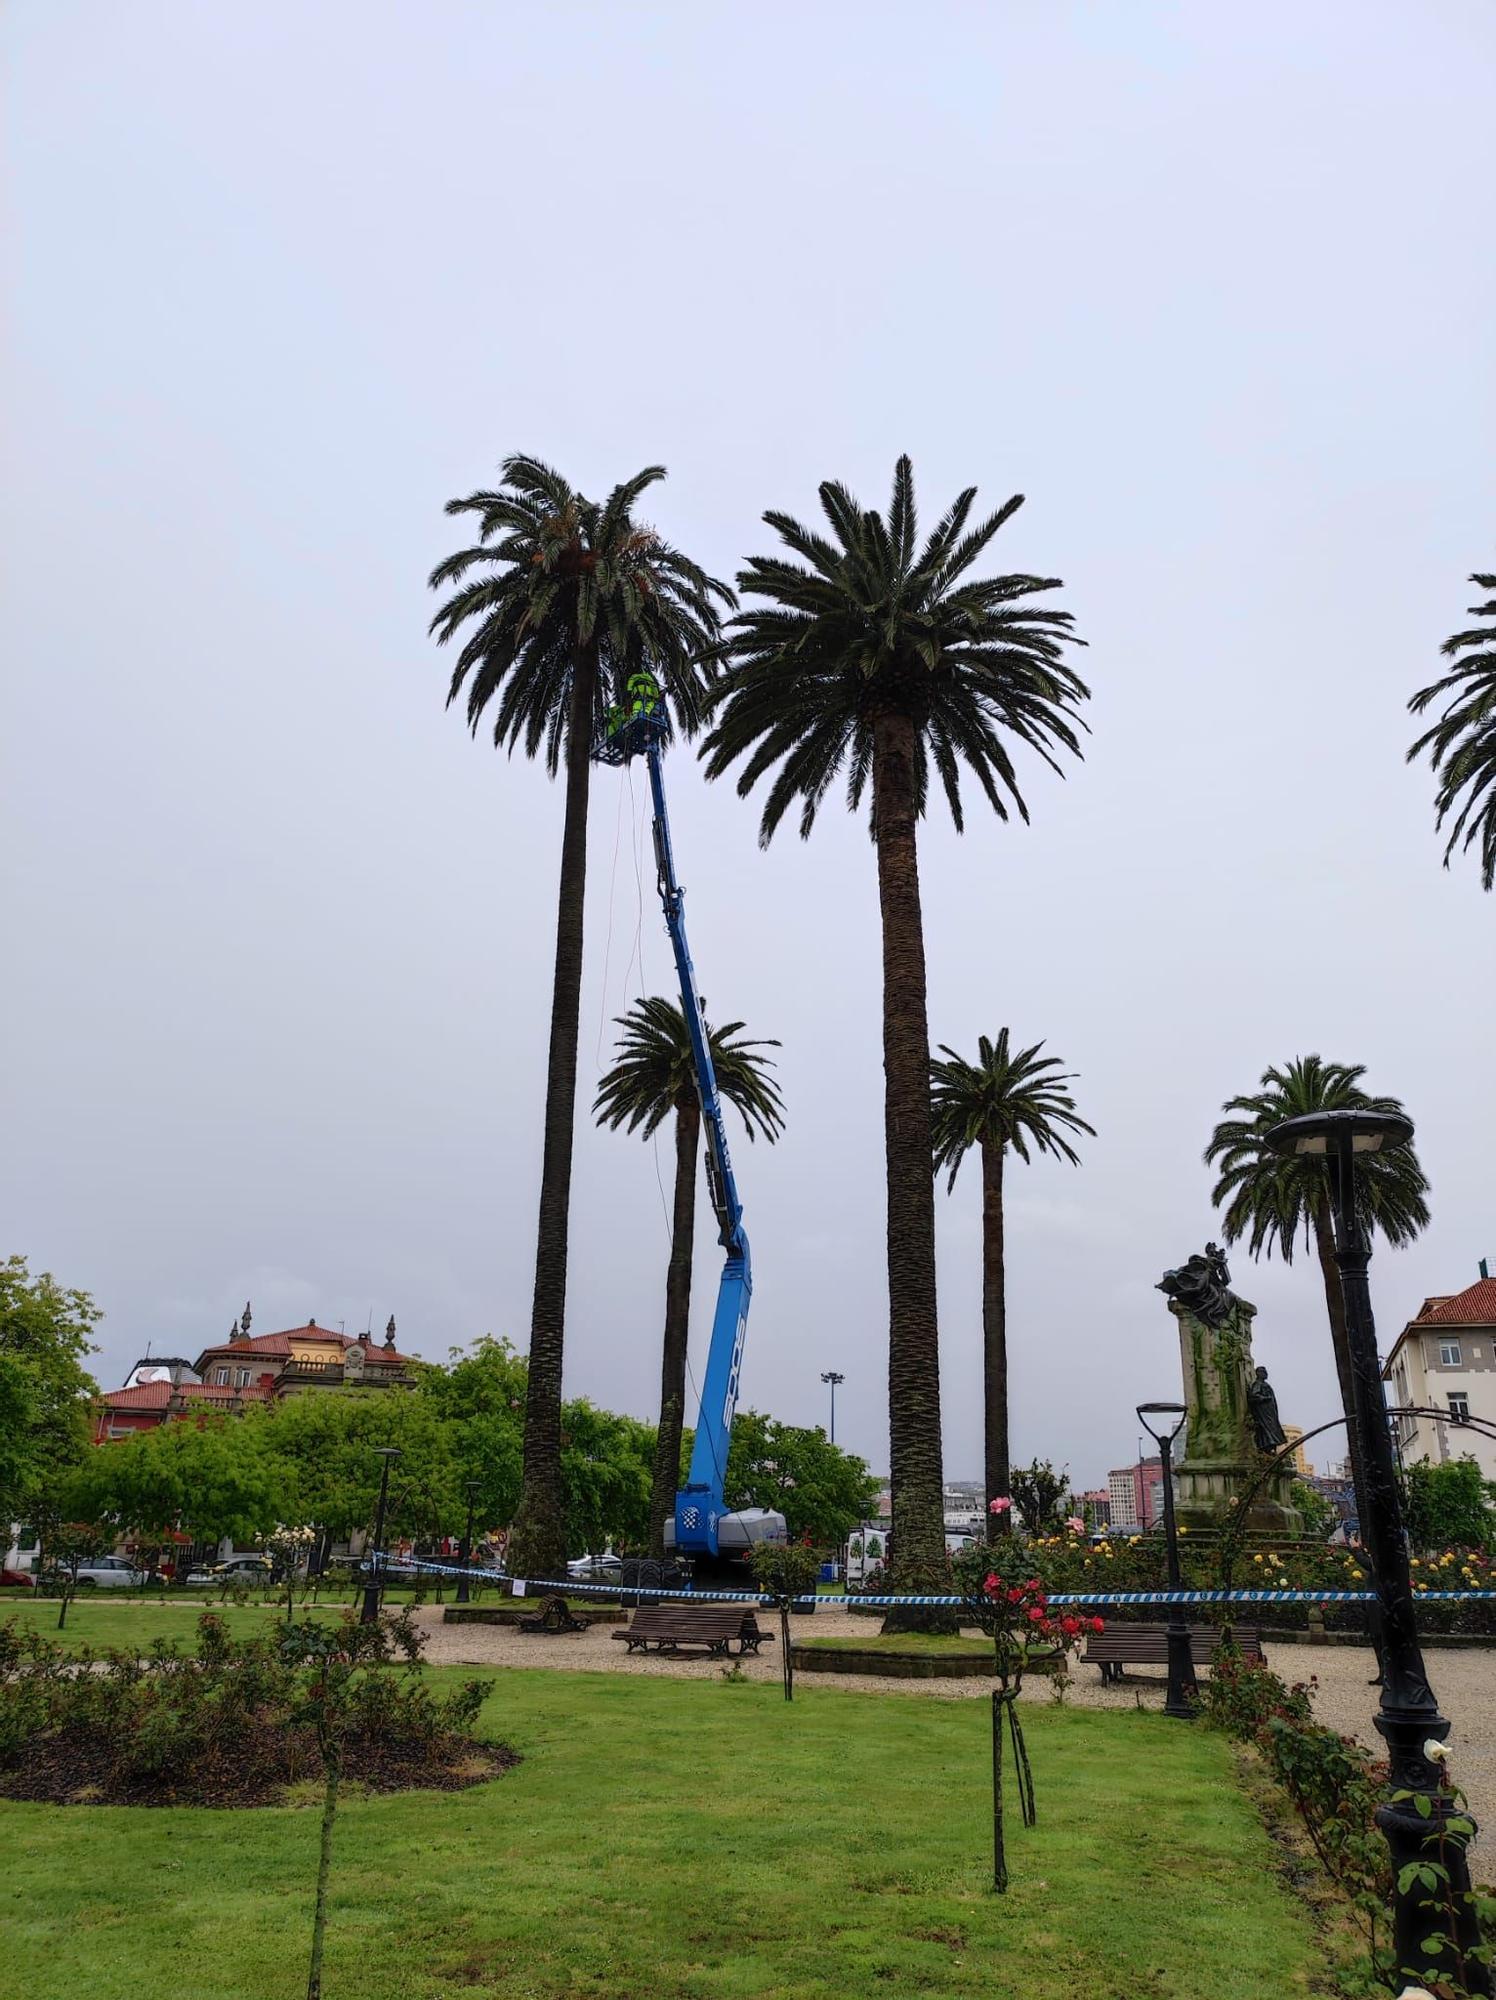 El Concello inicia el tratamiento contra el picudo rojo en las palmeras de Méndez Núñez